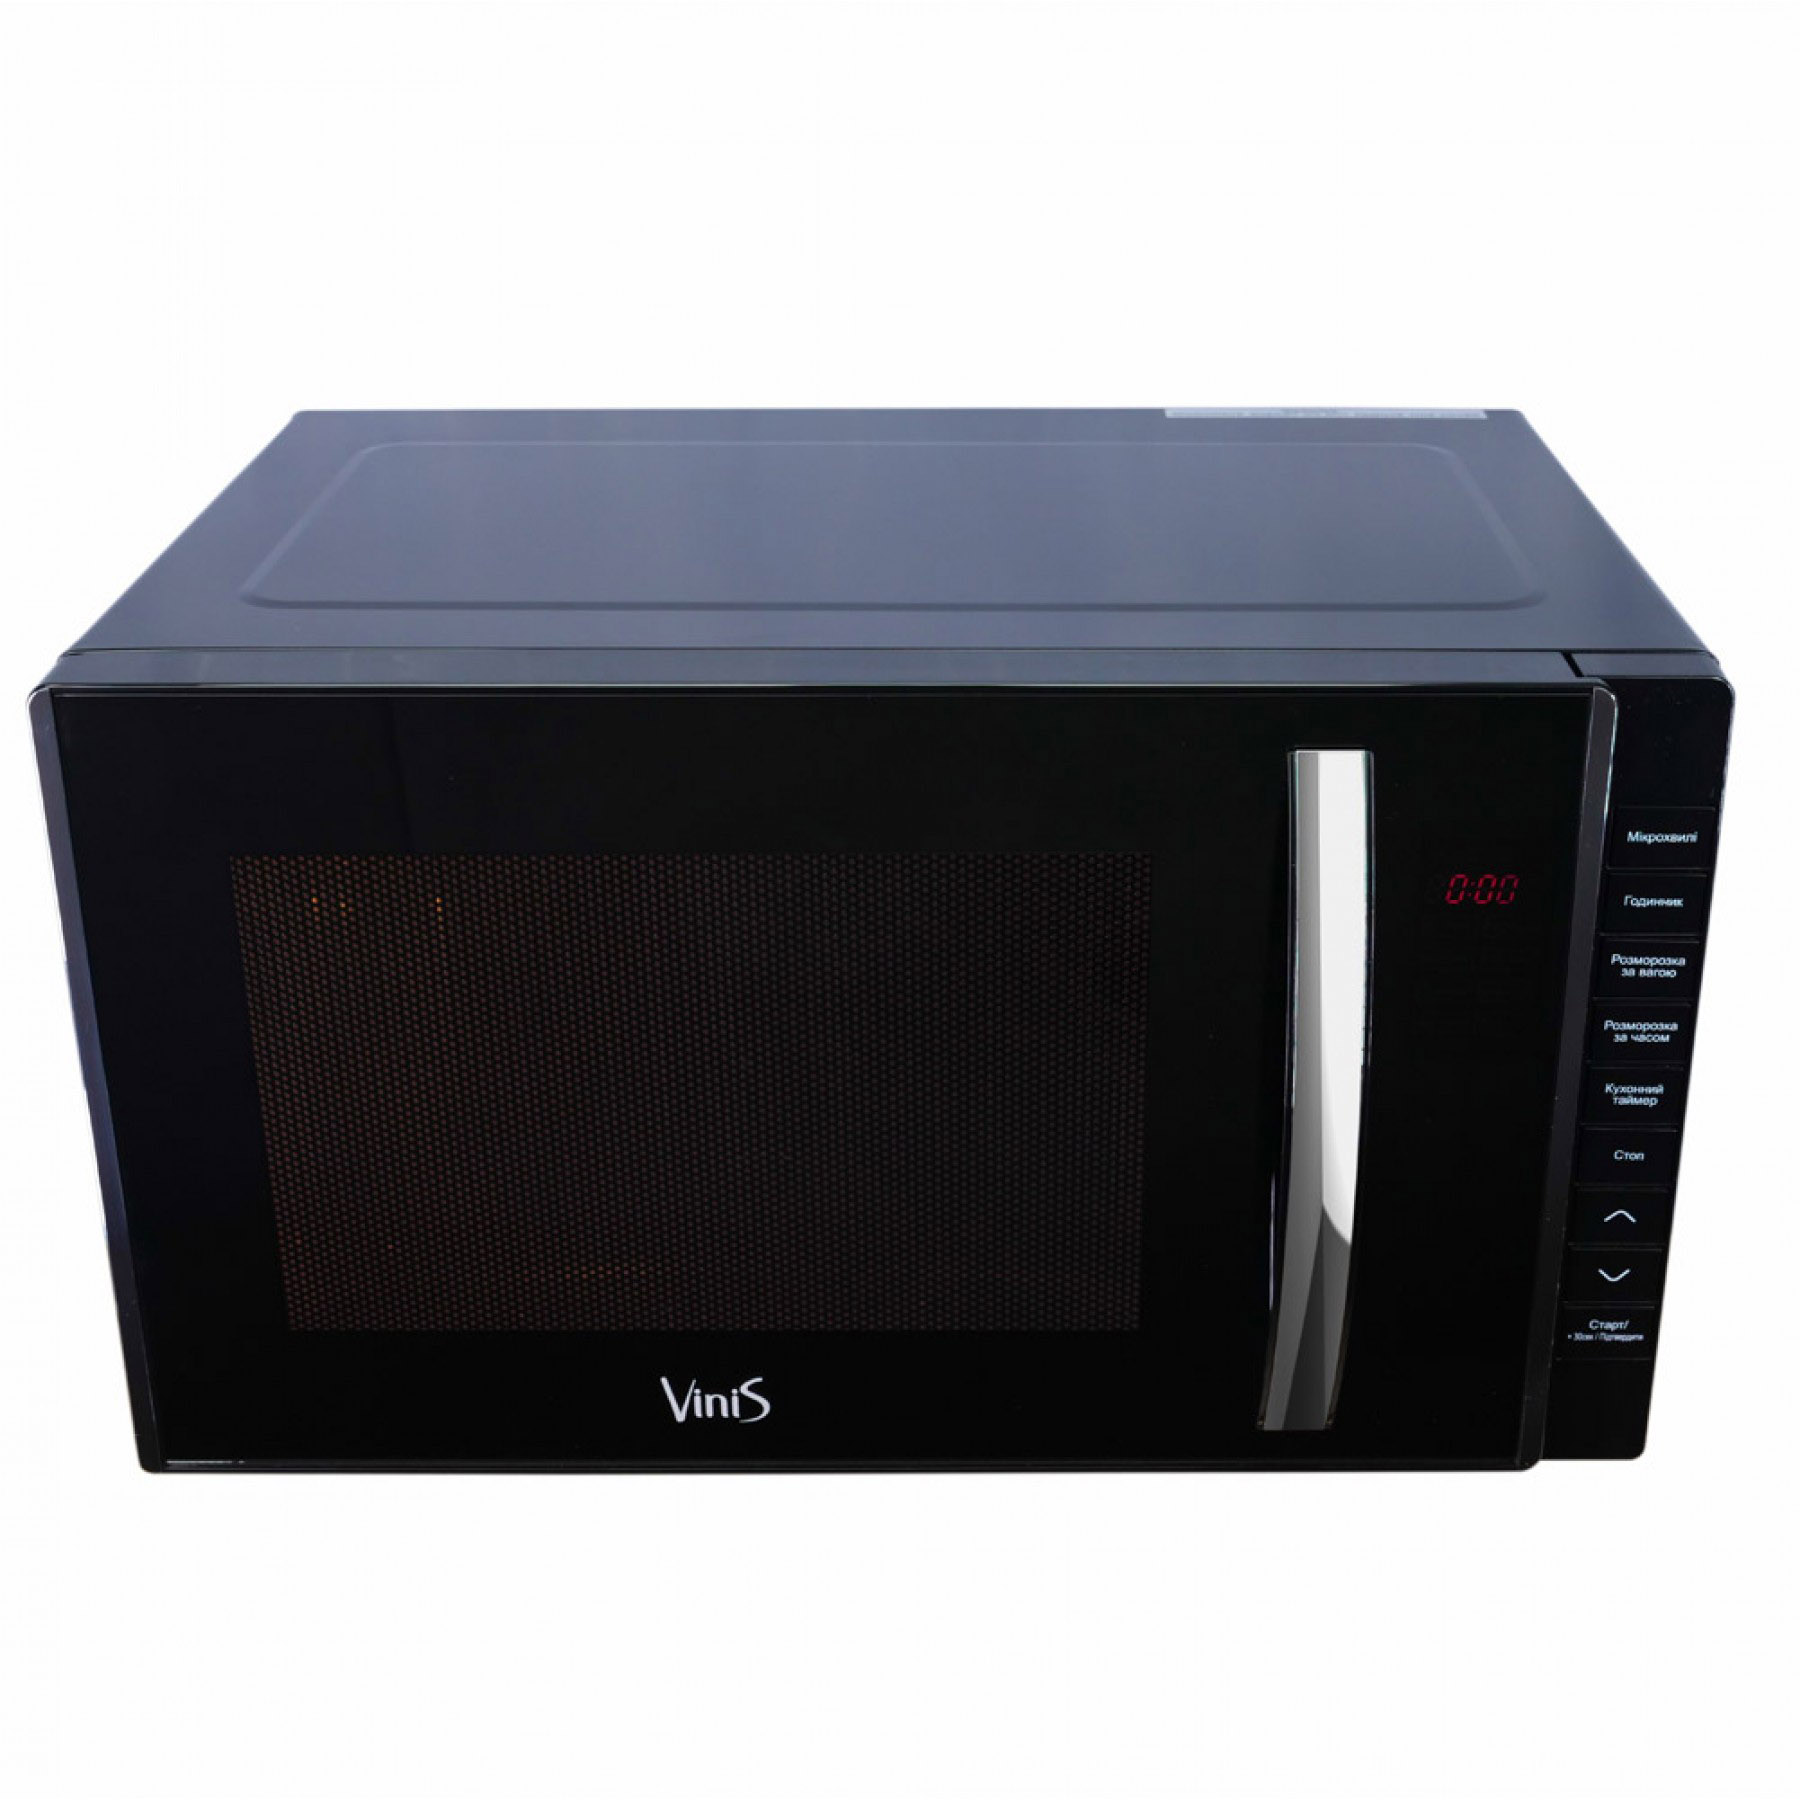 Микроволновая печь Vinis VMW-E23802B отзывы - изображения 5